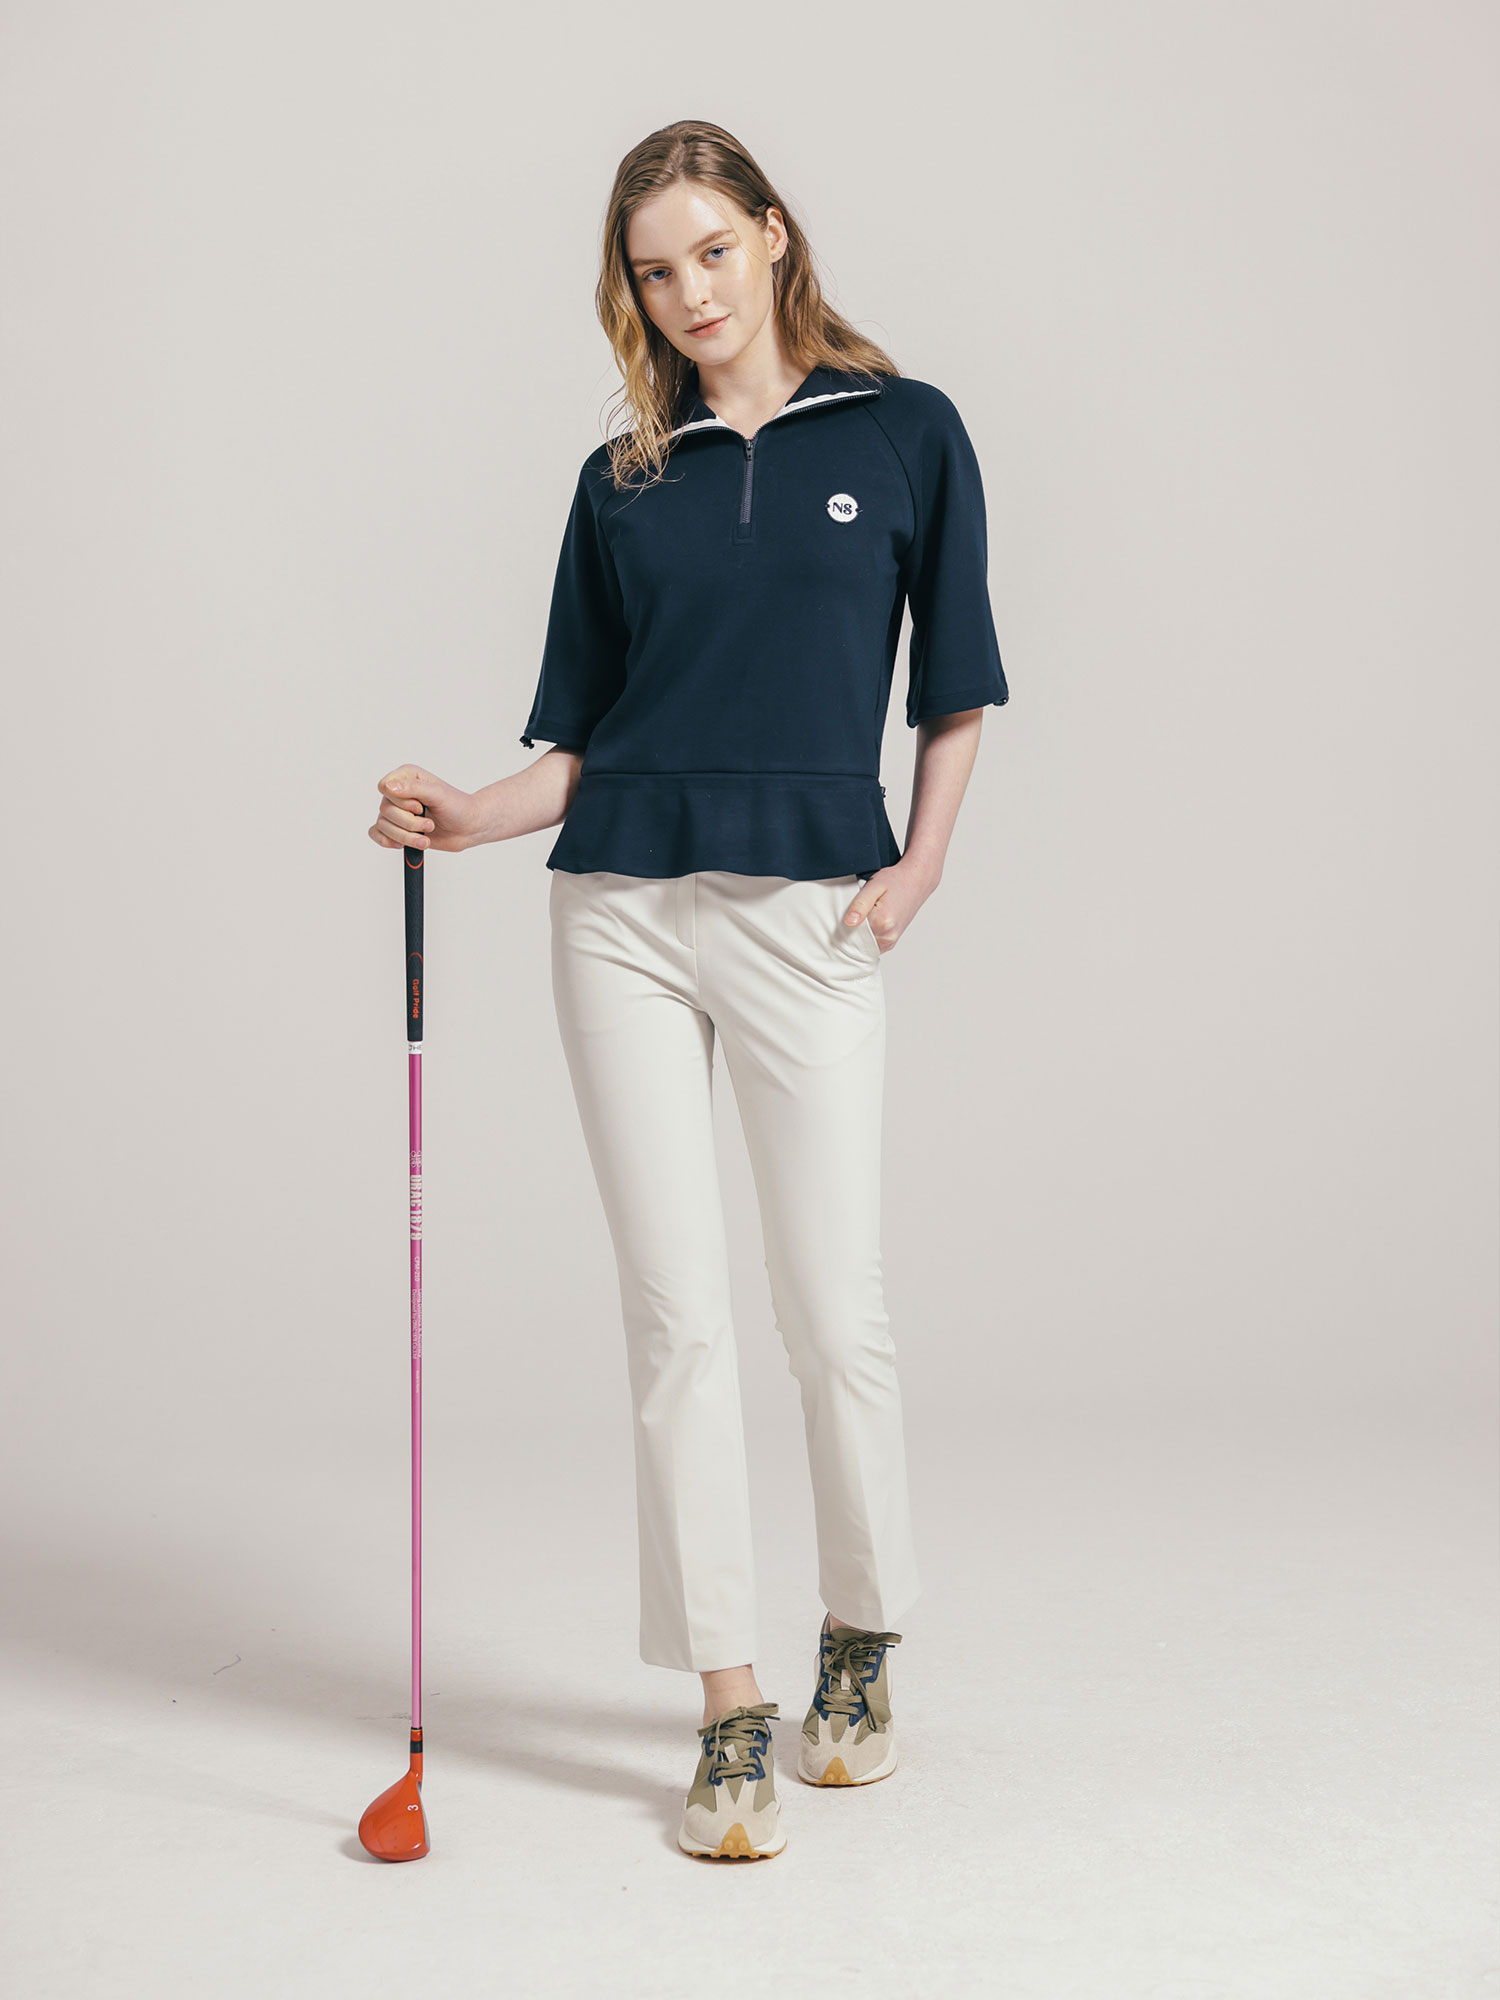 NEIEL Golf Half ZipUp Short-Sleeve Pullover